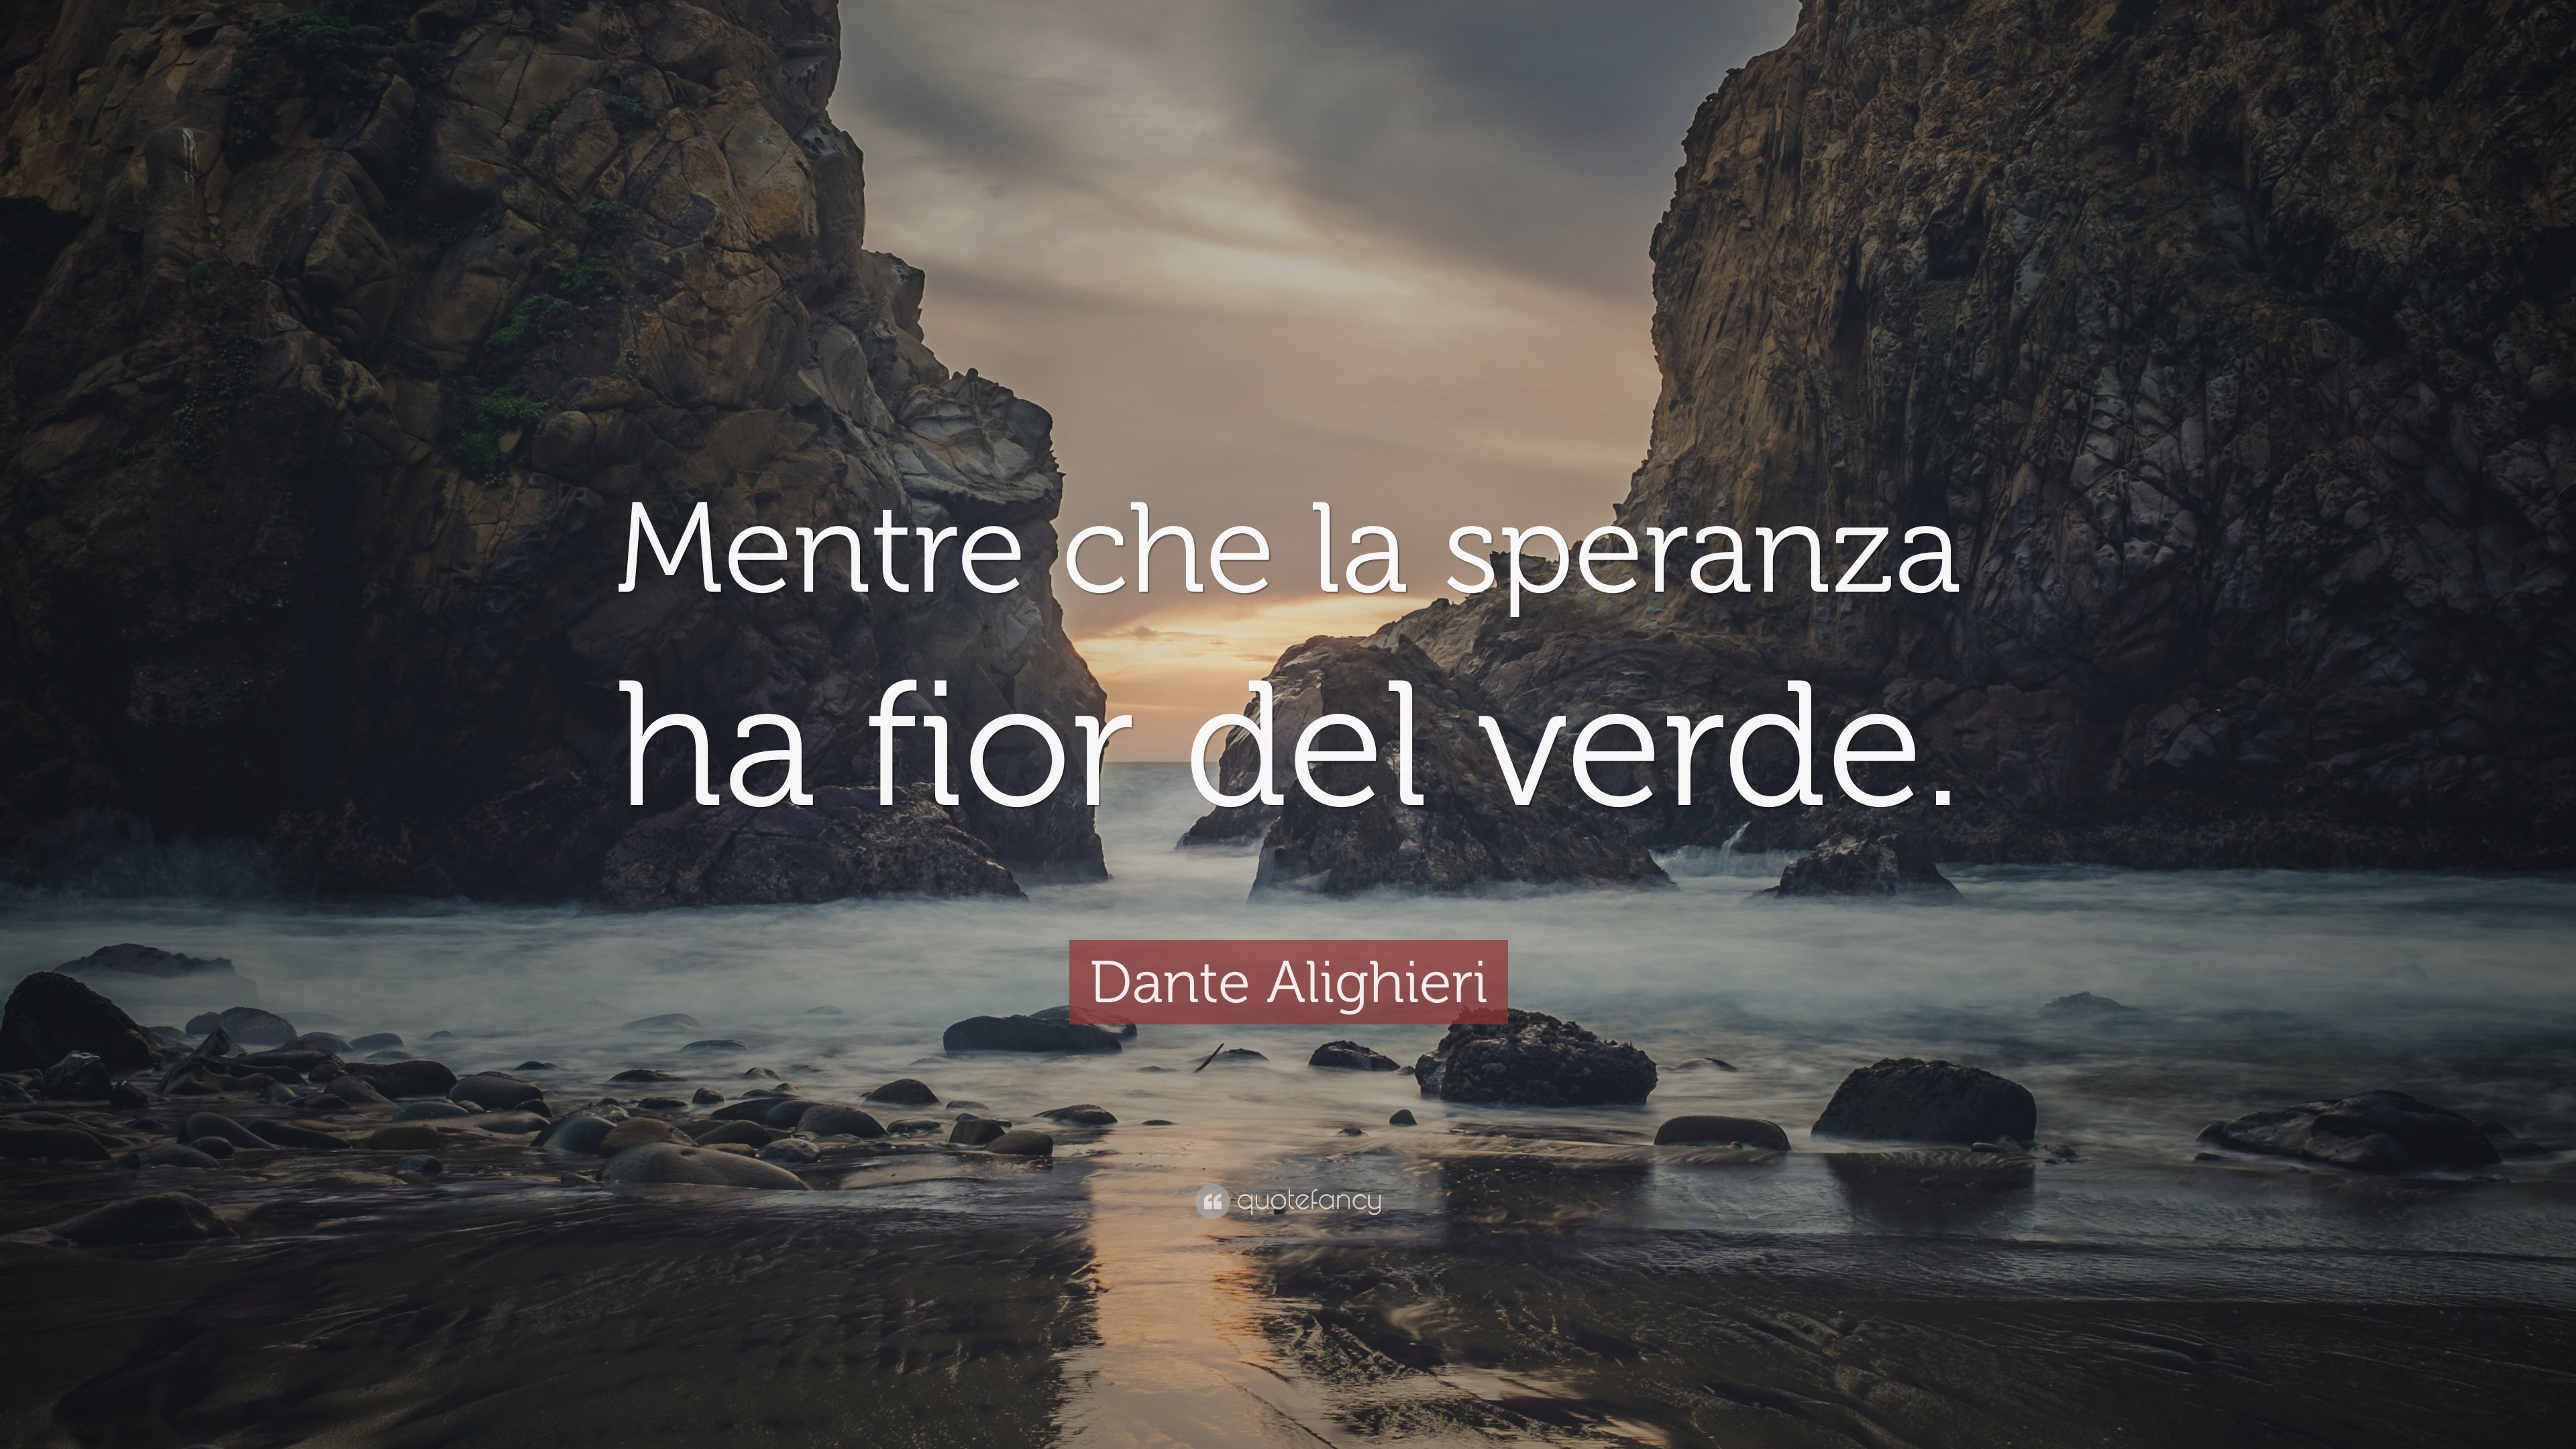 Dante Alighieri  Dante alighieri, Dante, Frases